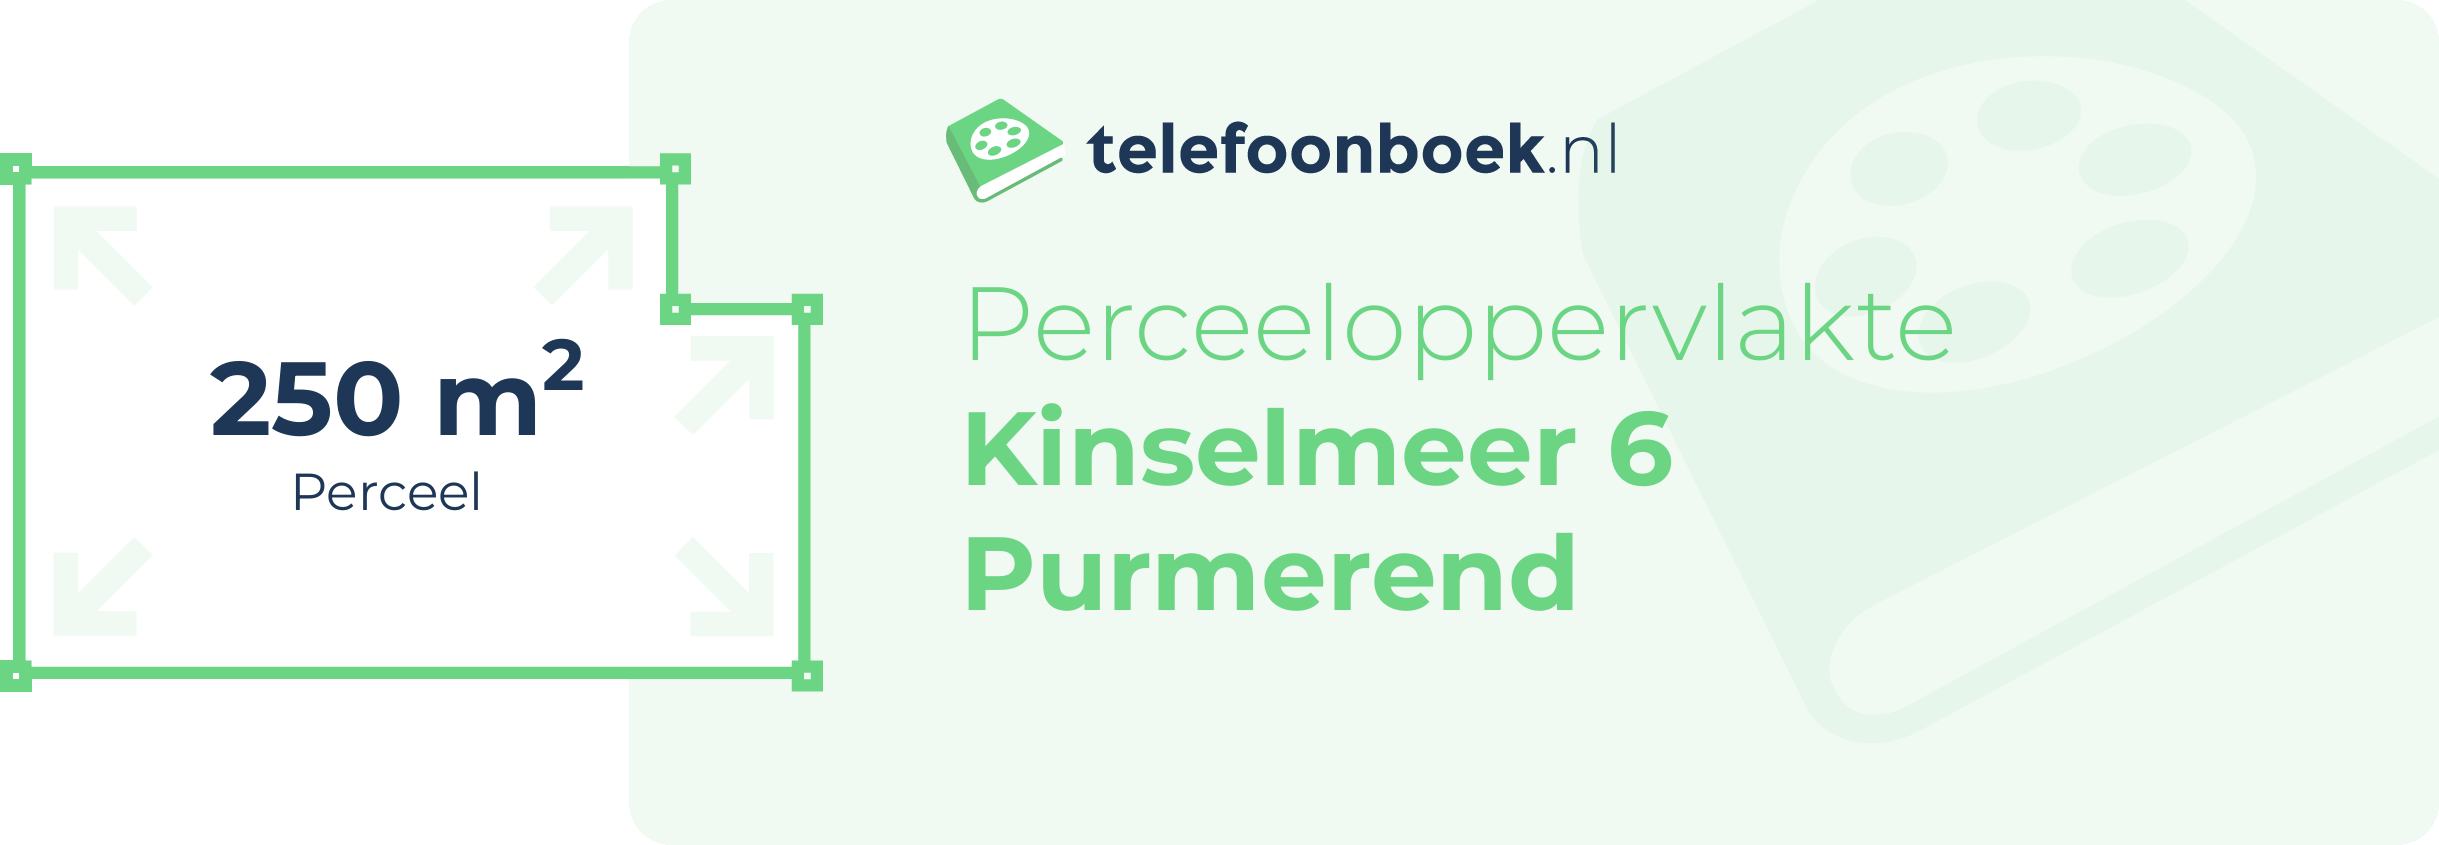 Perceeloppervlakte Kinselmeer 6 Purmerend